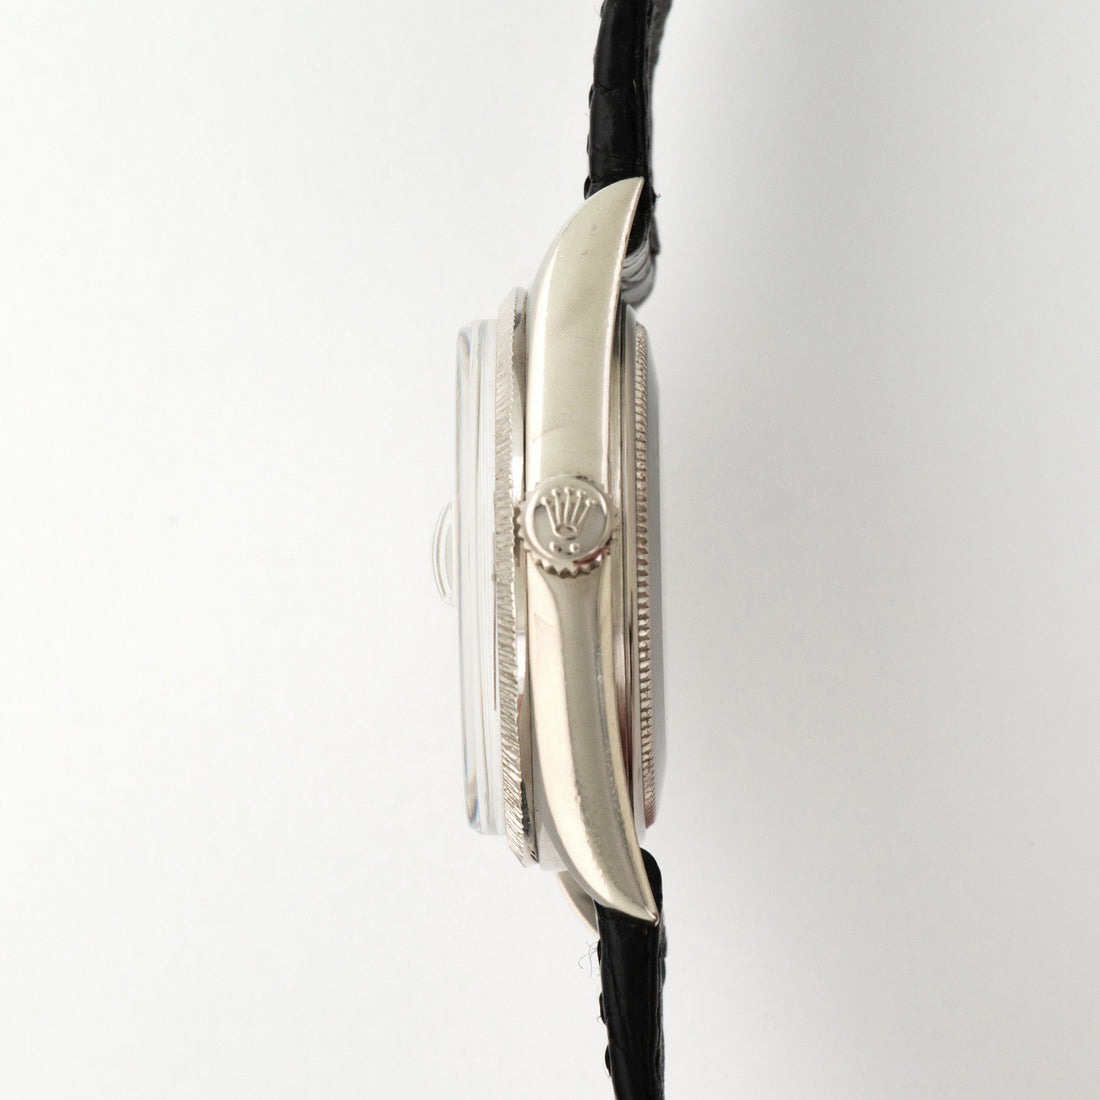 Rolex White Gold Day-Date Watch Ref. 1807